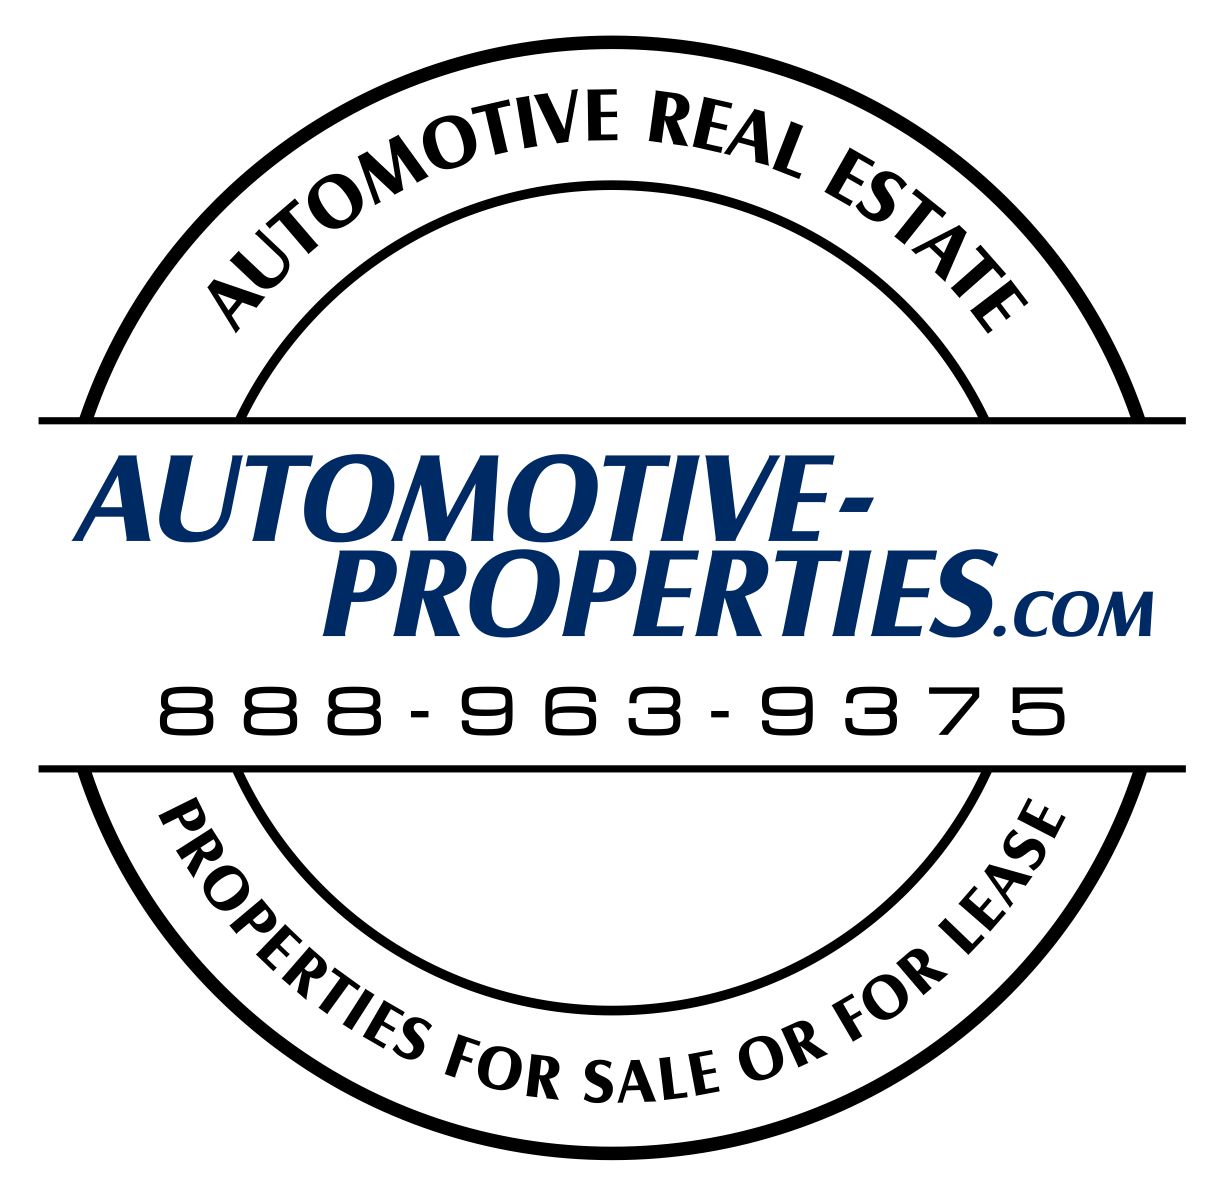 Automotive-Properties.com